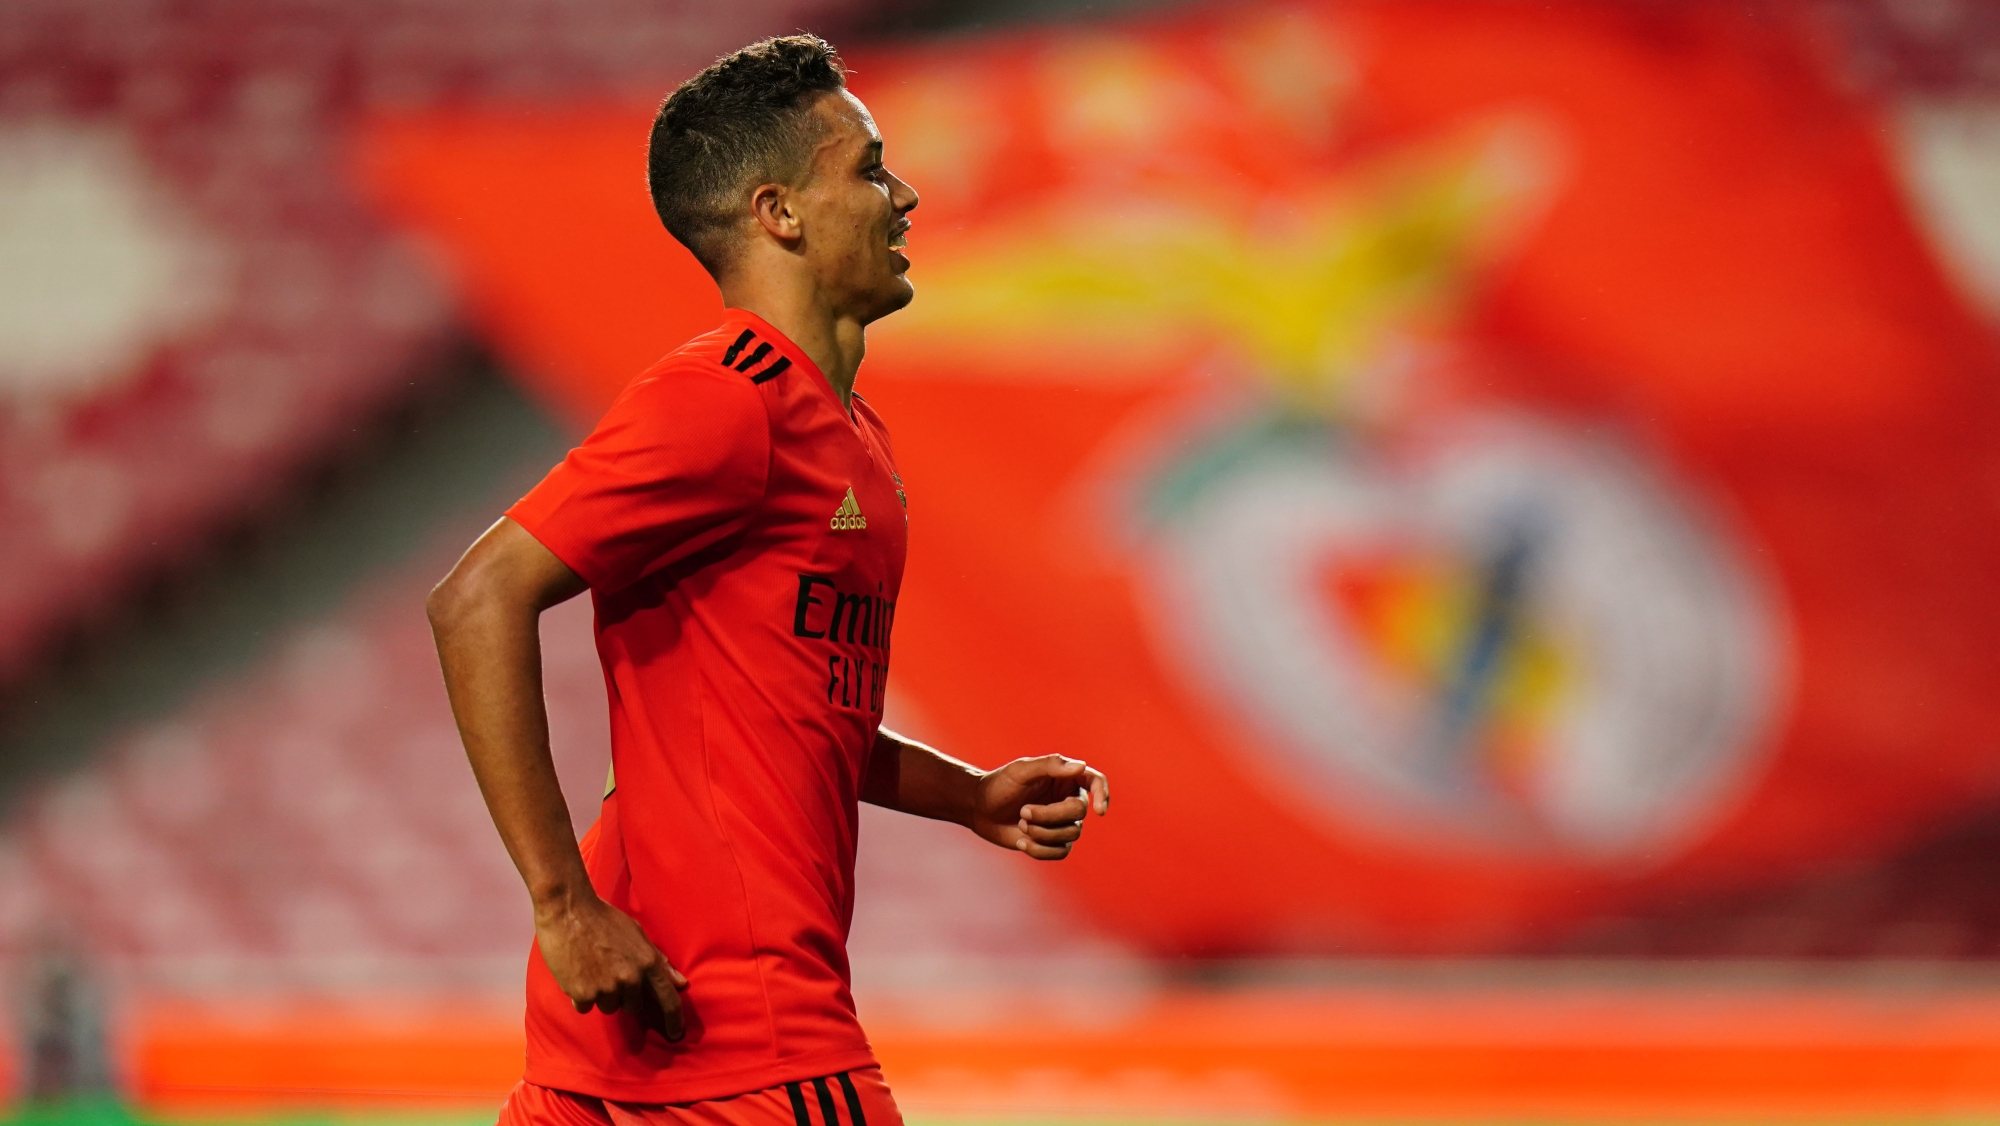 Pedrinho fez 31 jogos pelo Benfica em 2020/21, 11 dos quais como titular num total de 1.019 minutos. Marcou apenas um golo, na Taça de Portugal